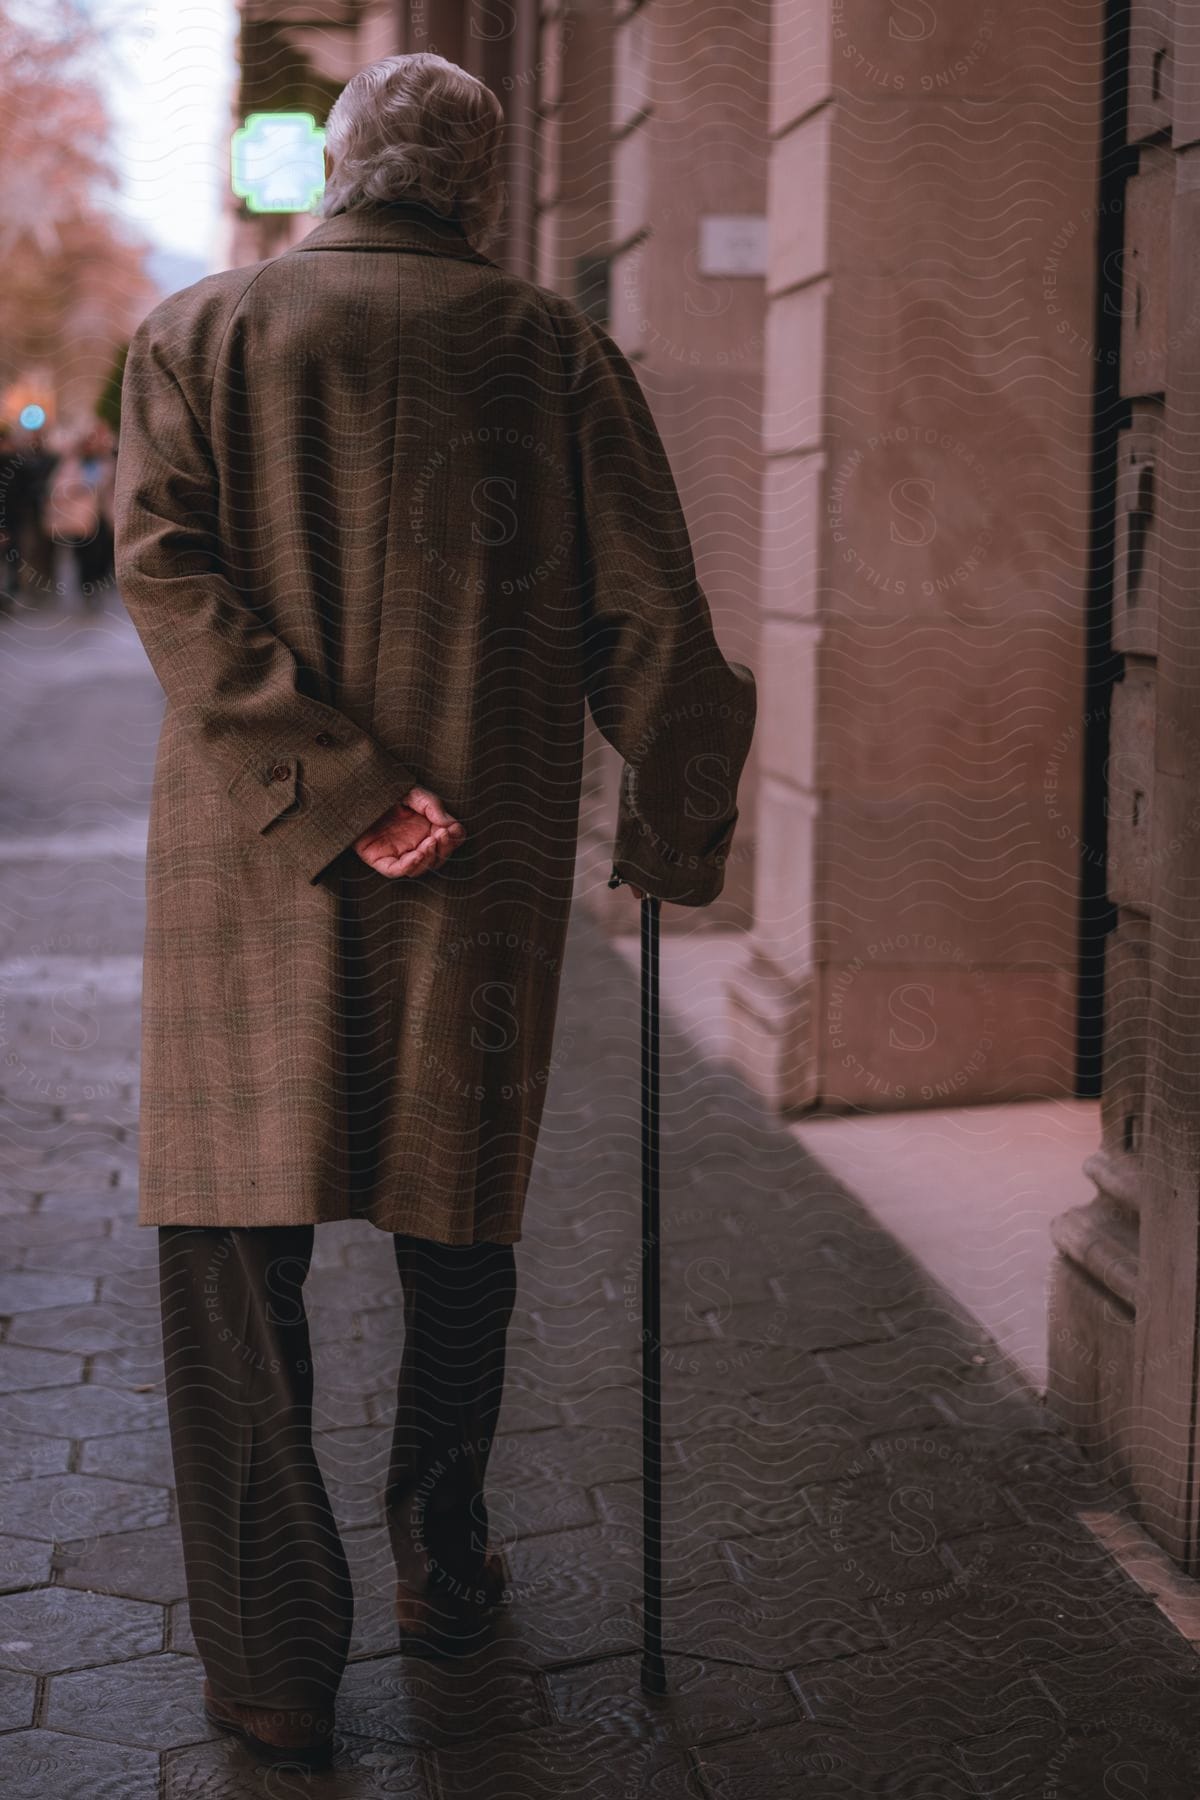 A man walking down a sidewalk in a city